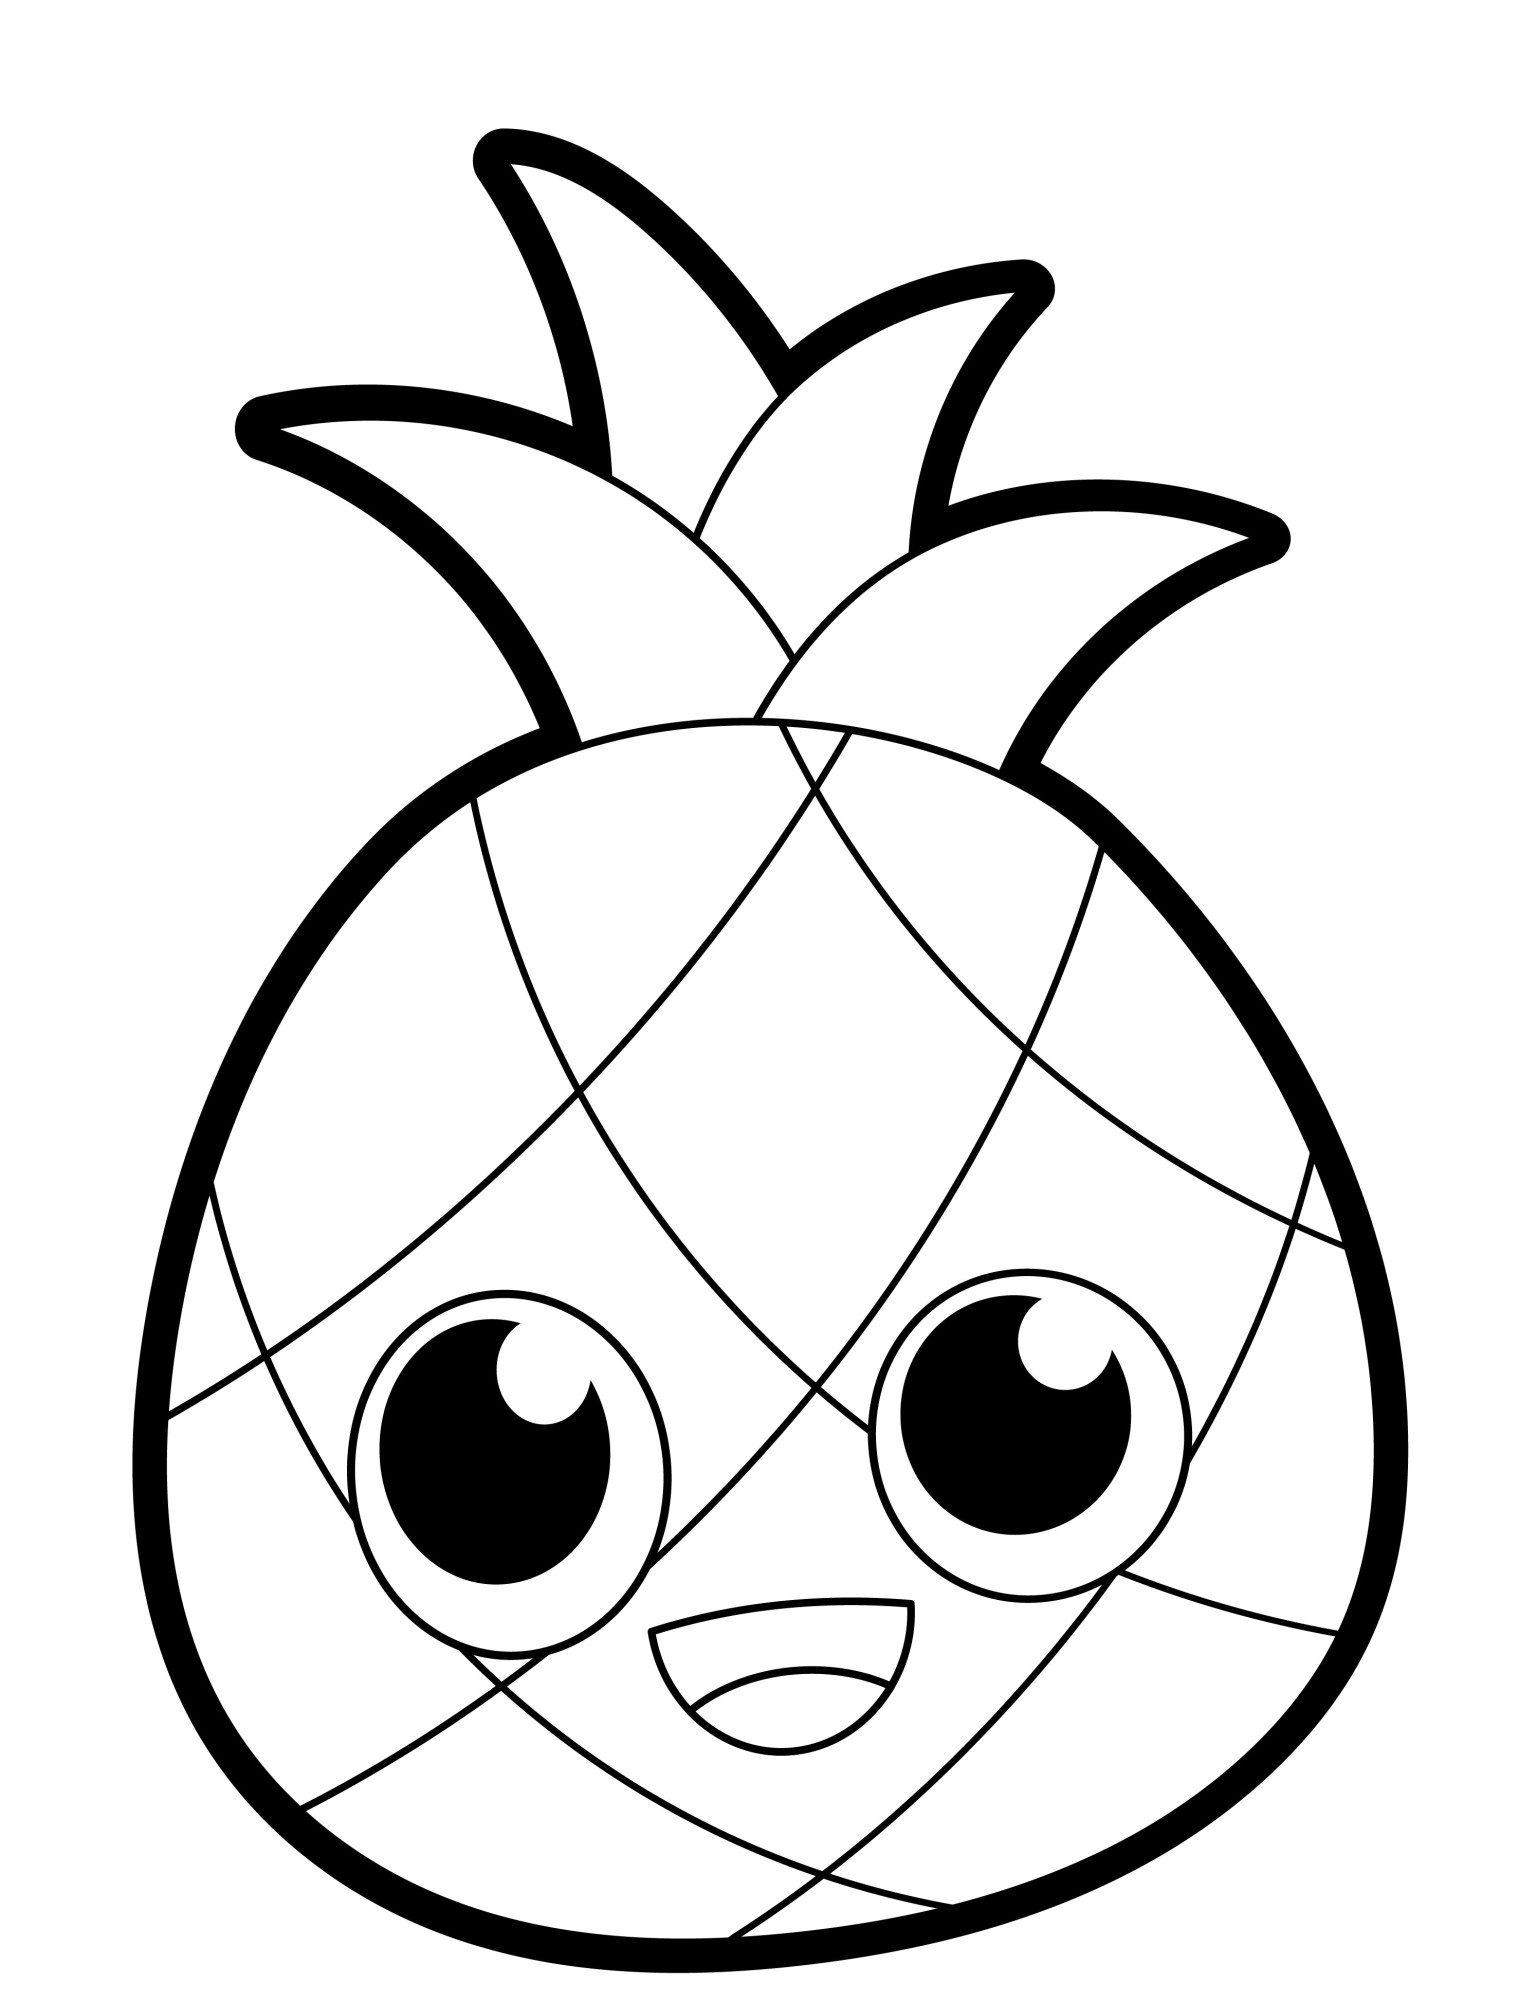 Раскраска для детей: ананас с добрым лицом и большими глазами